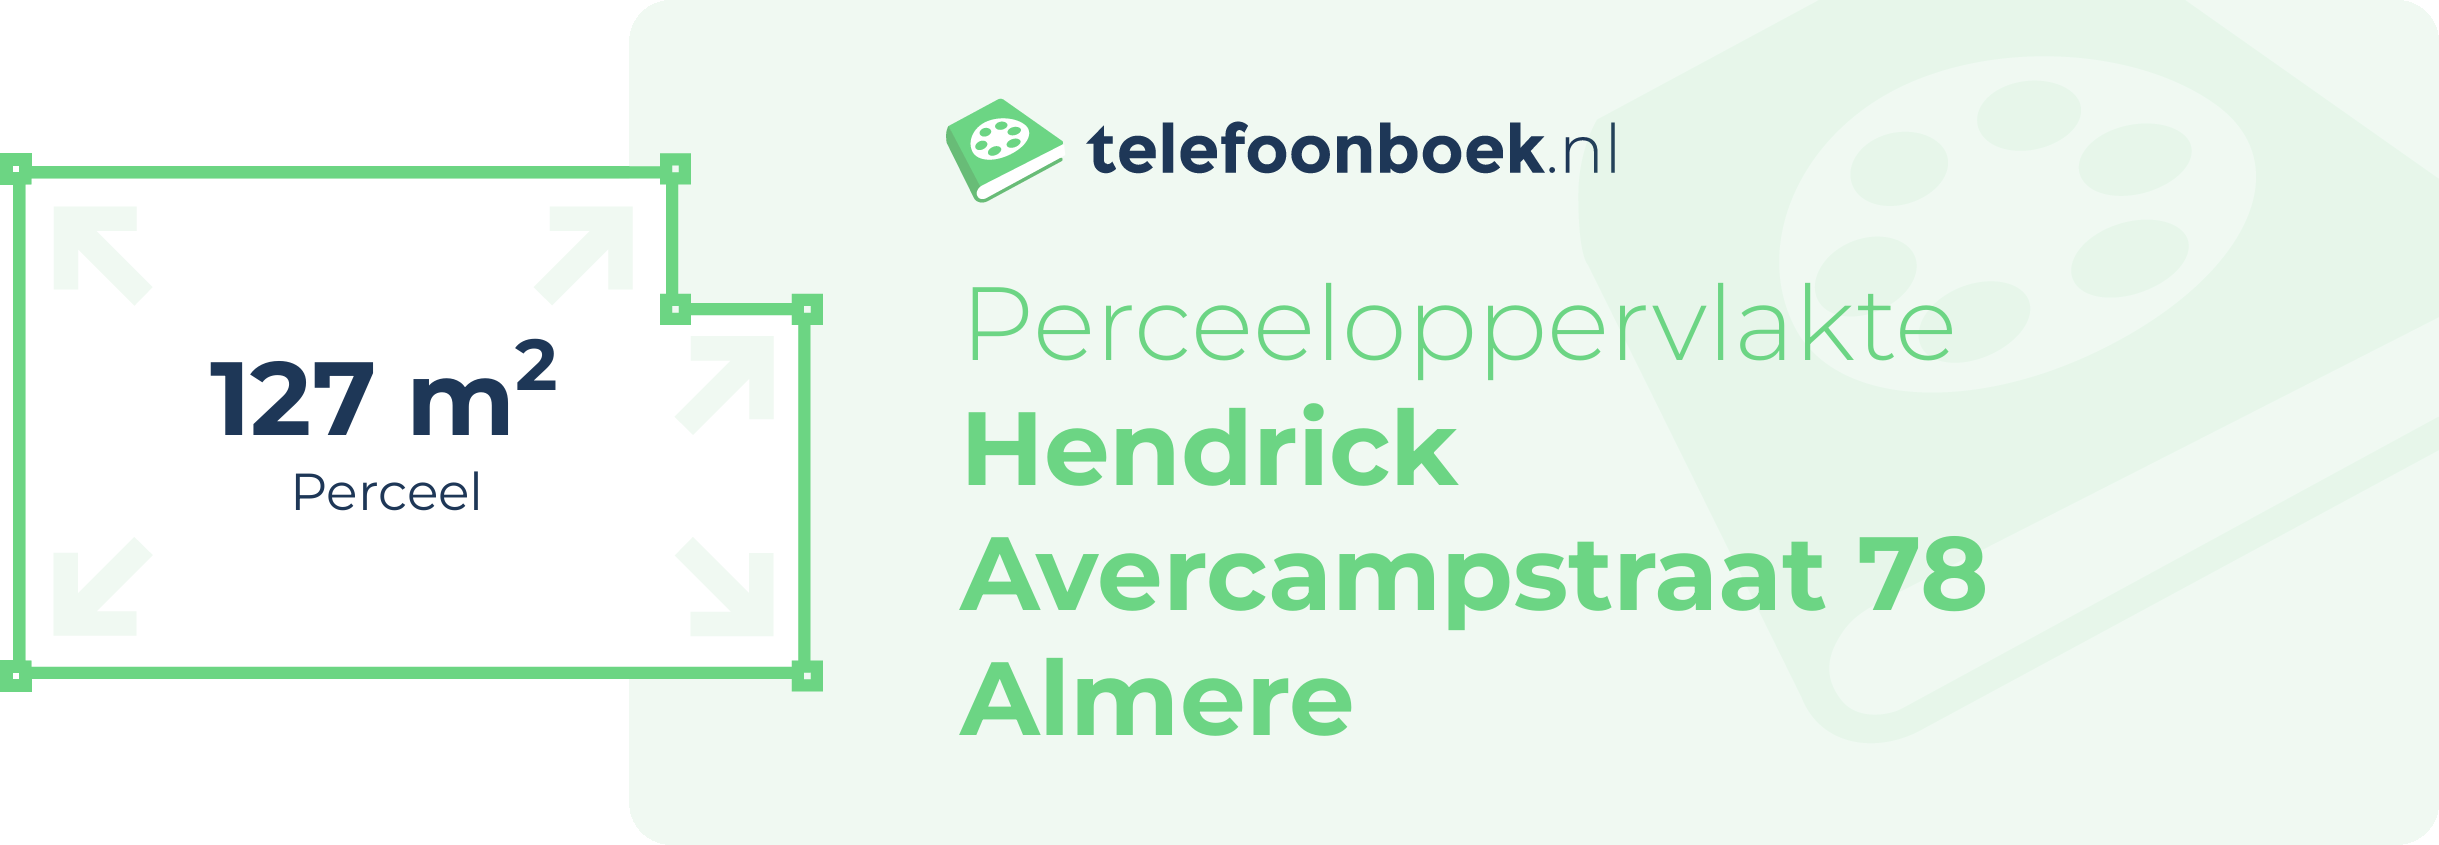 Perceeloppervlakte Hendrick Avercampstraat 78 Almere